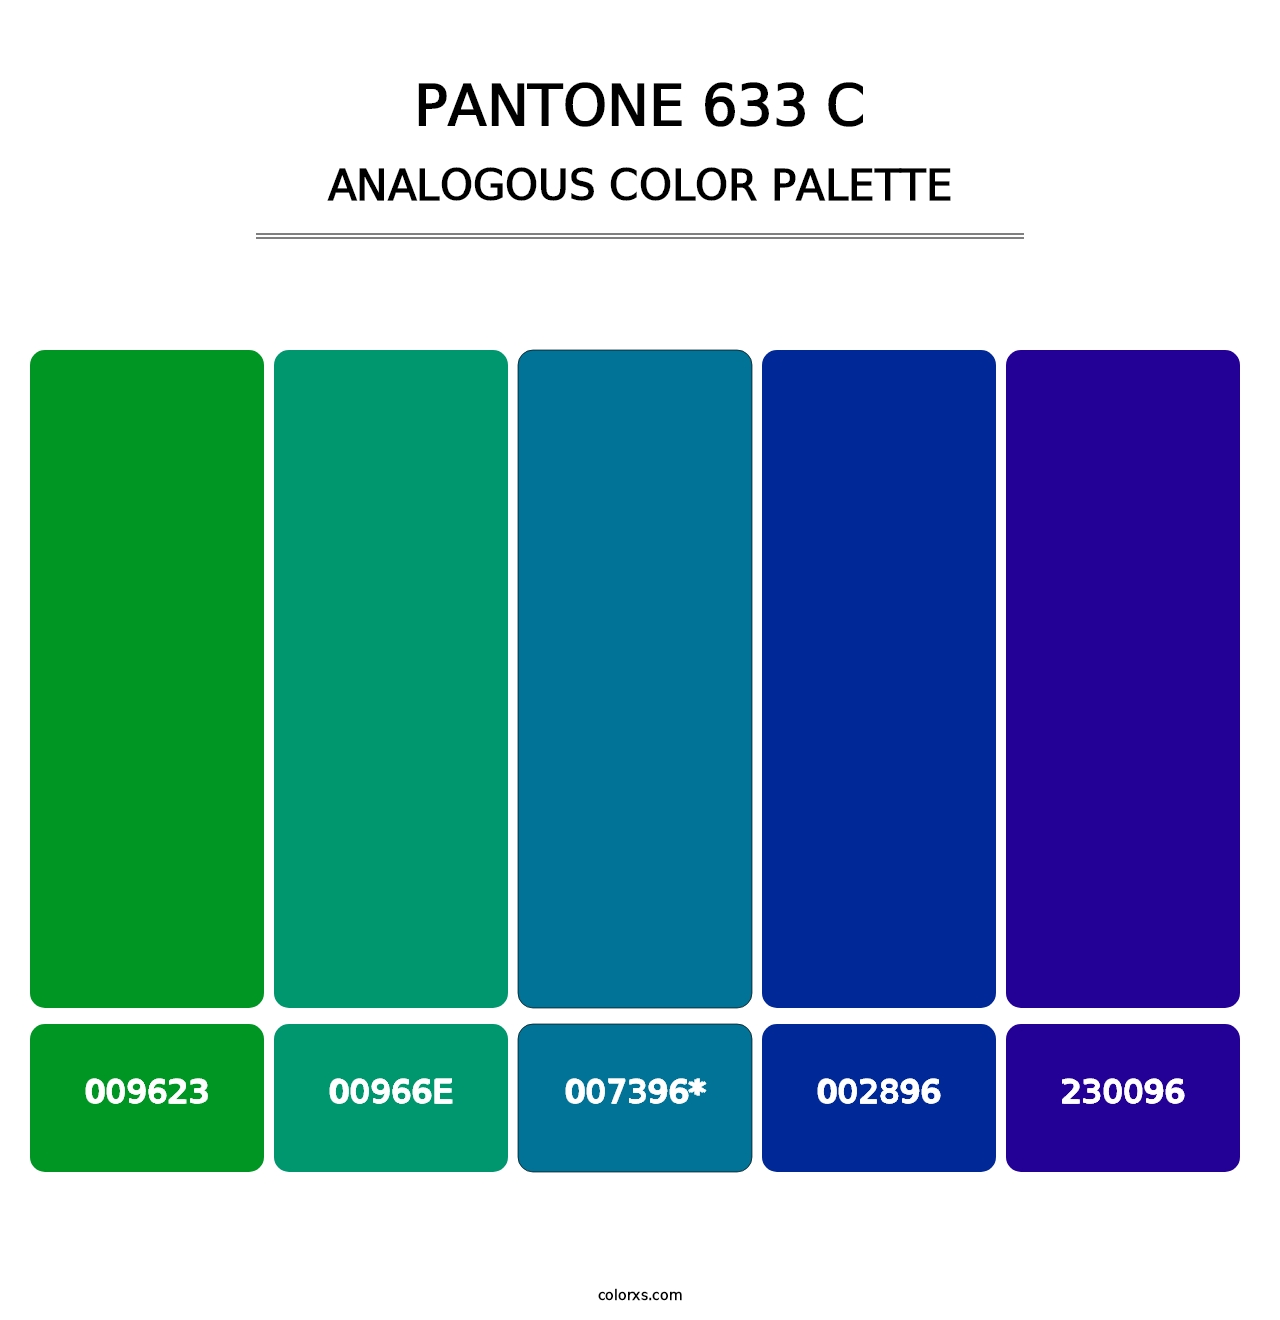 PANTONE 633 C - Analogous Color Palette